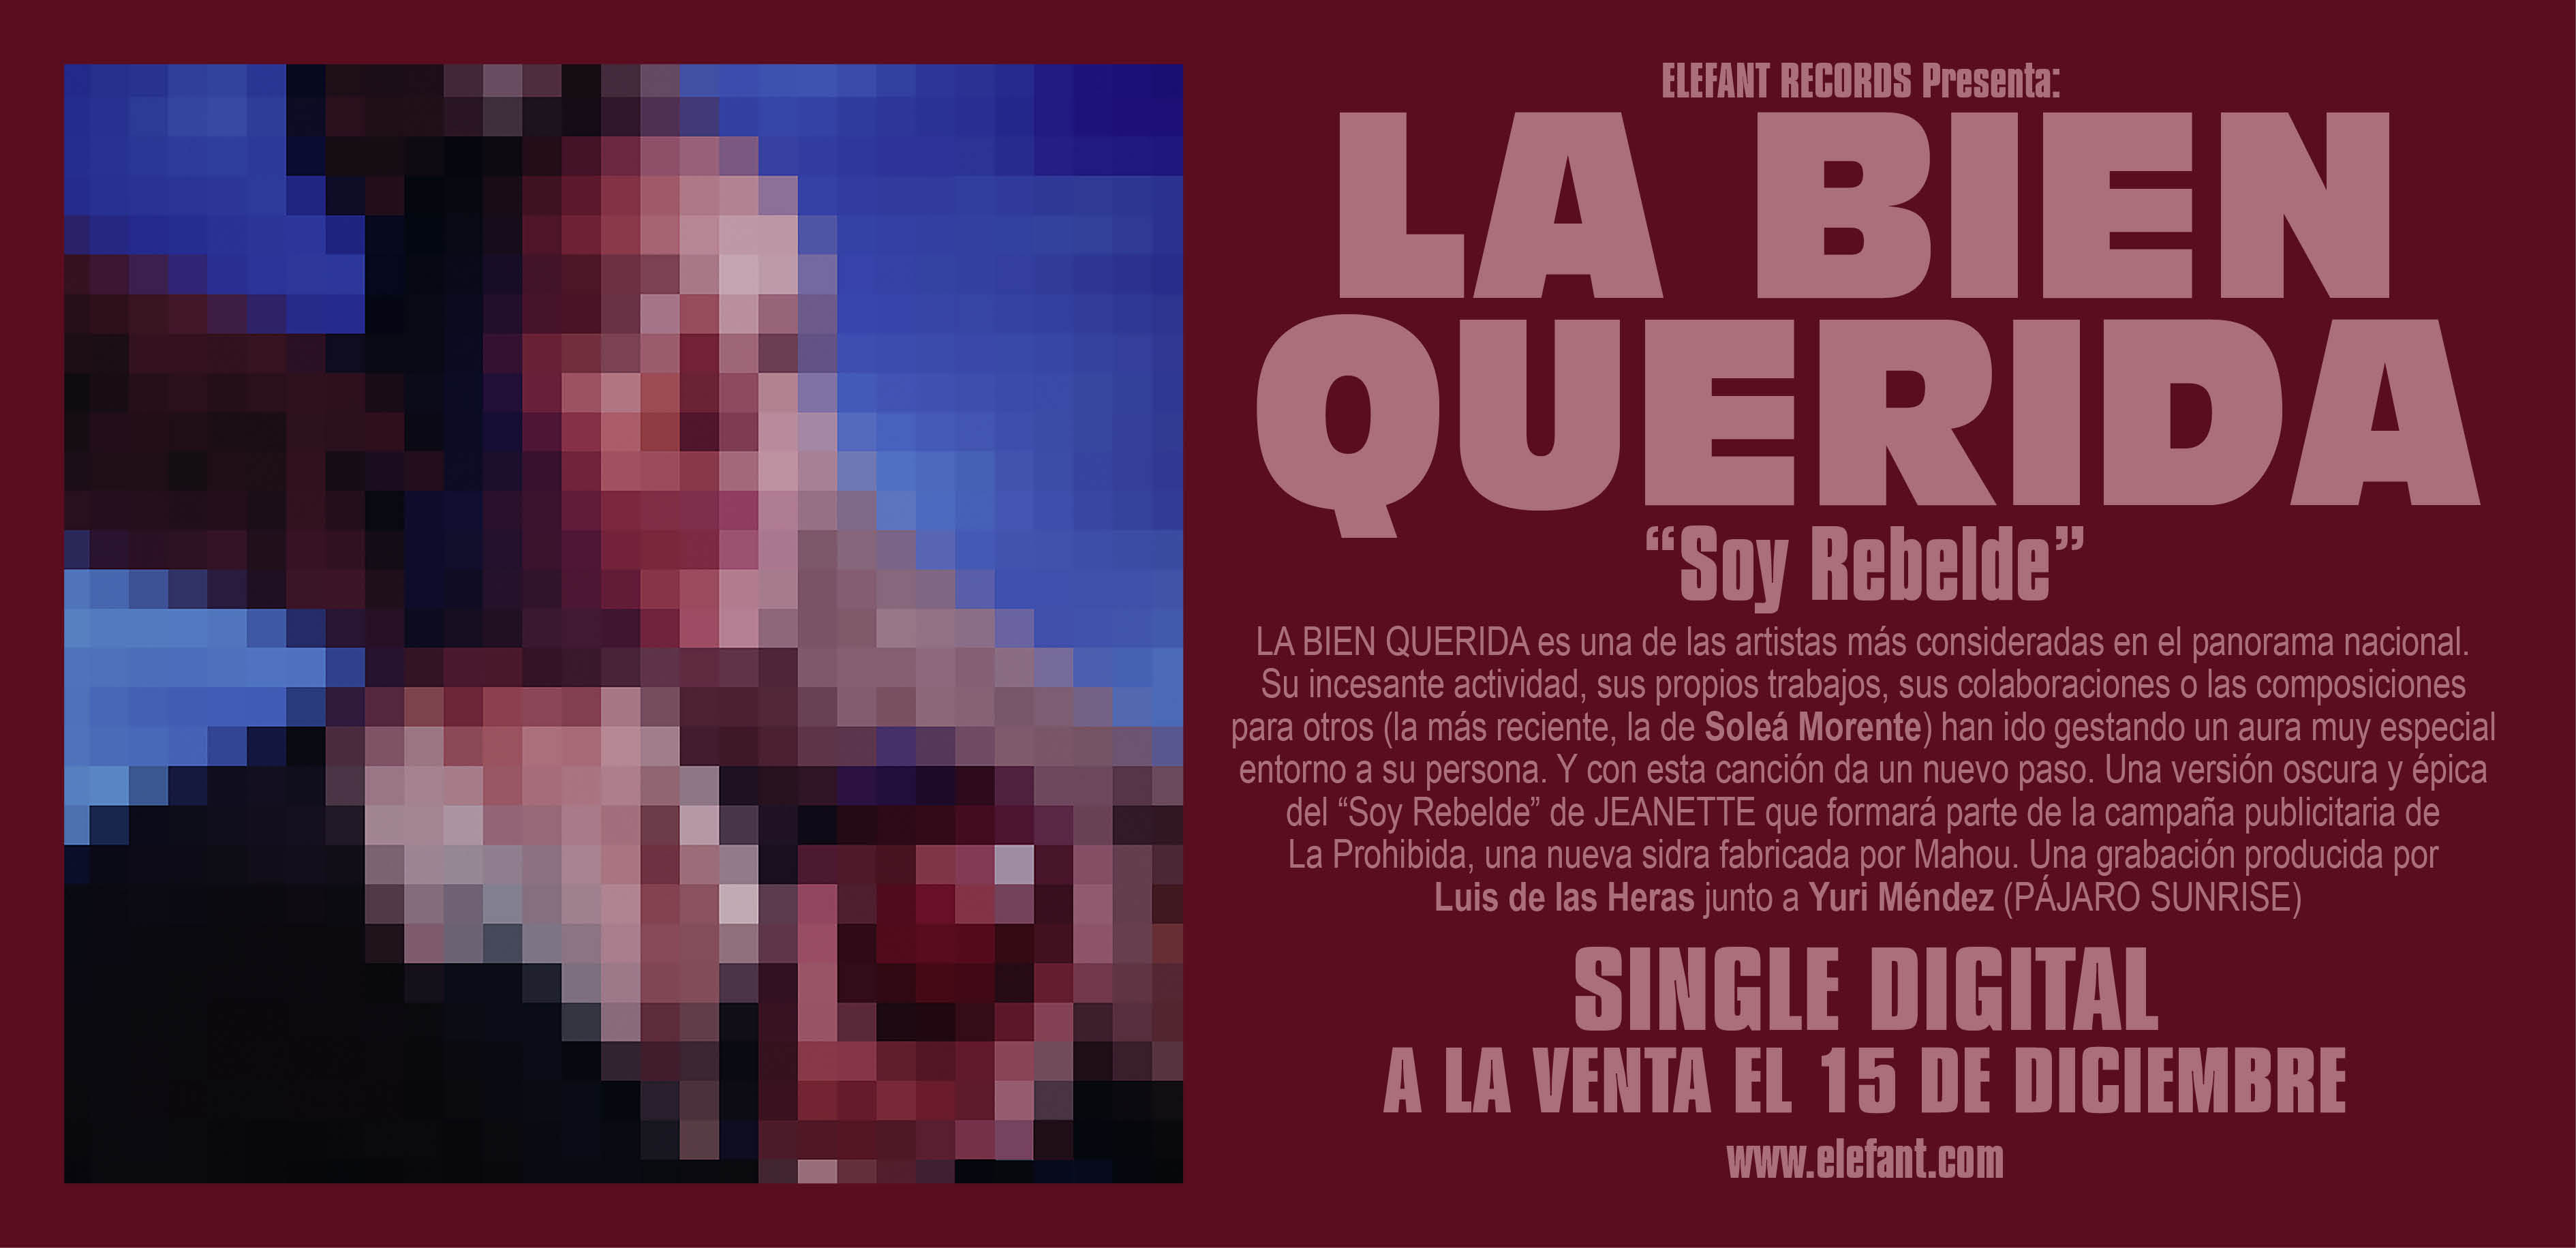 La Bien Querida "Soy Rebelde" Digital Single